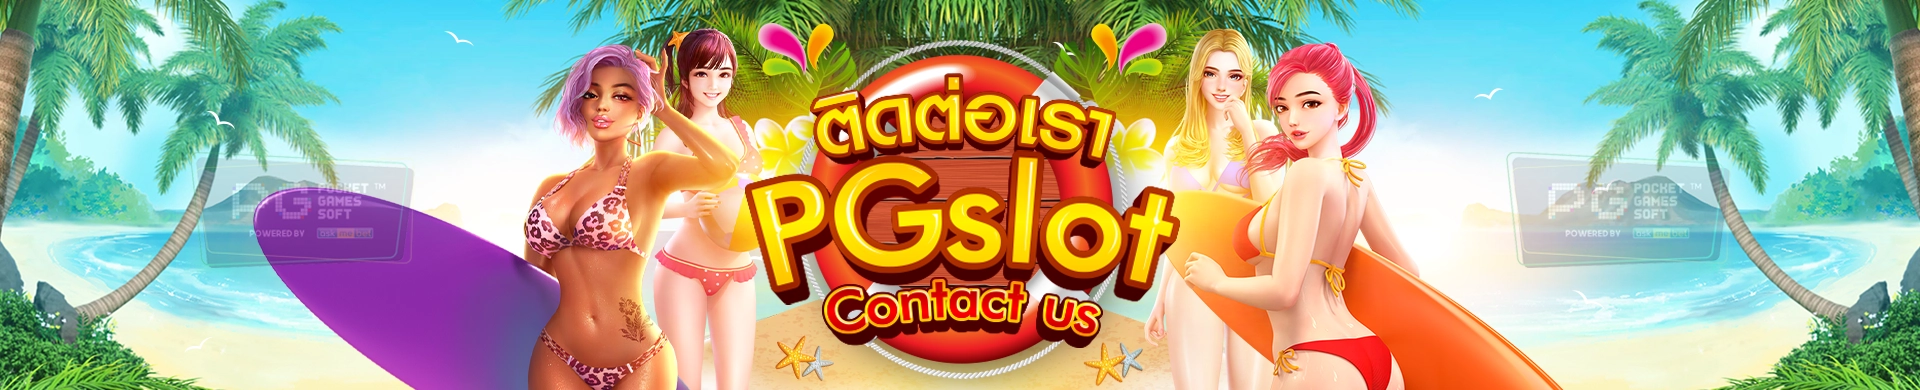 PG SLOT-banner